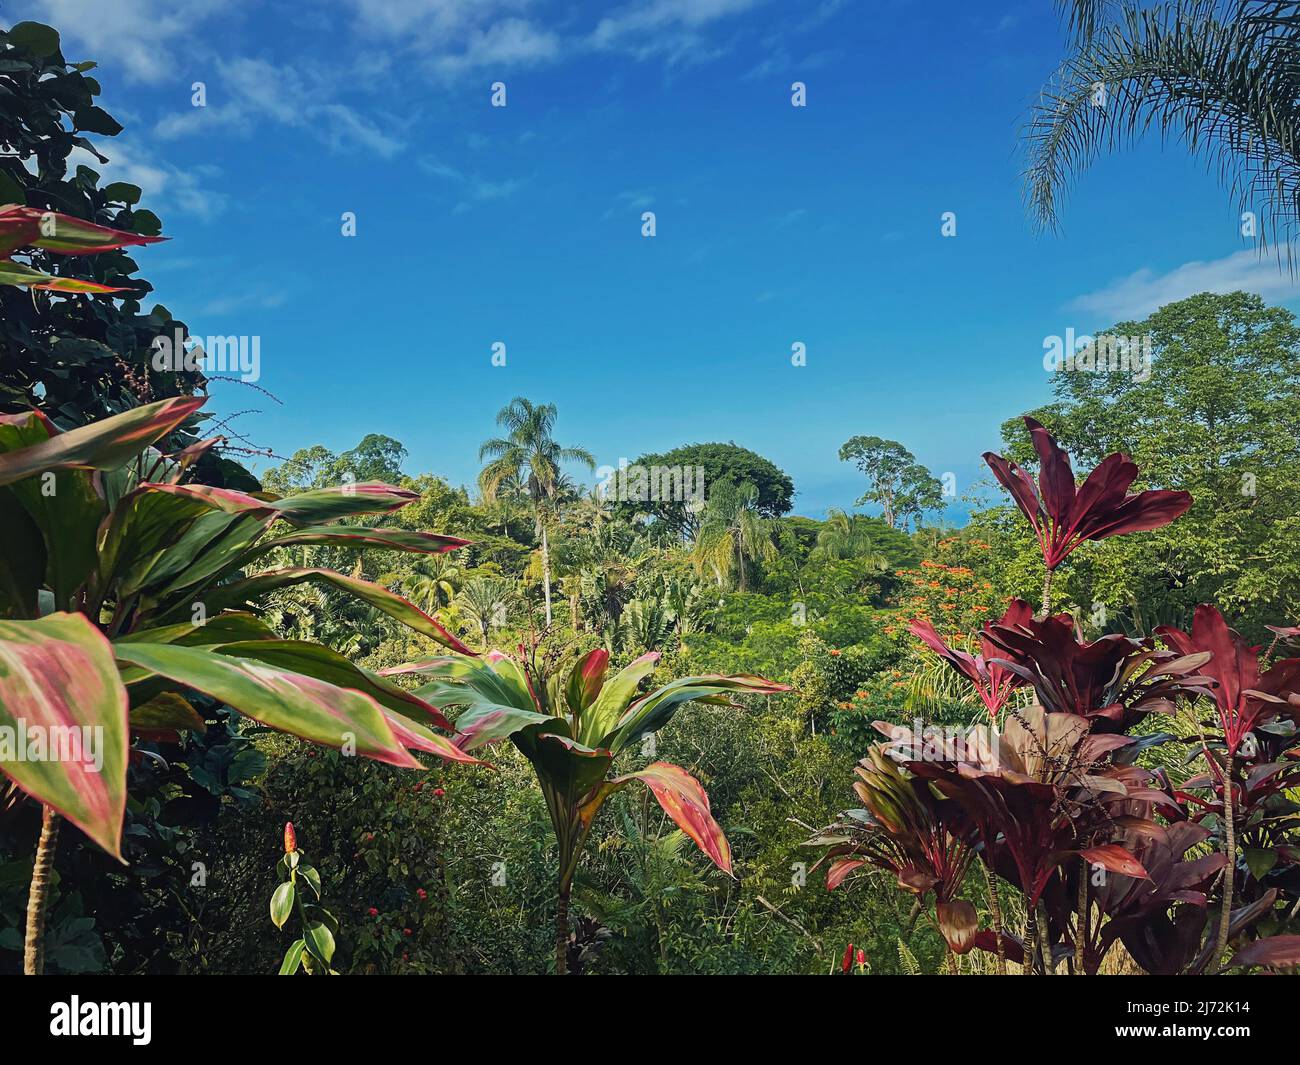 Clima tropicale con vegetazione giungla sfondo naturale. Paesaggio di alberi misti, foresta densa con foglie vivaci e colorate Foto Stock